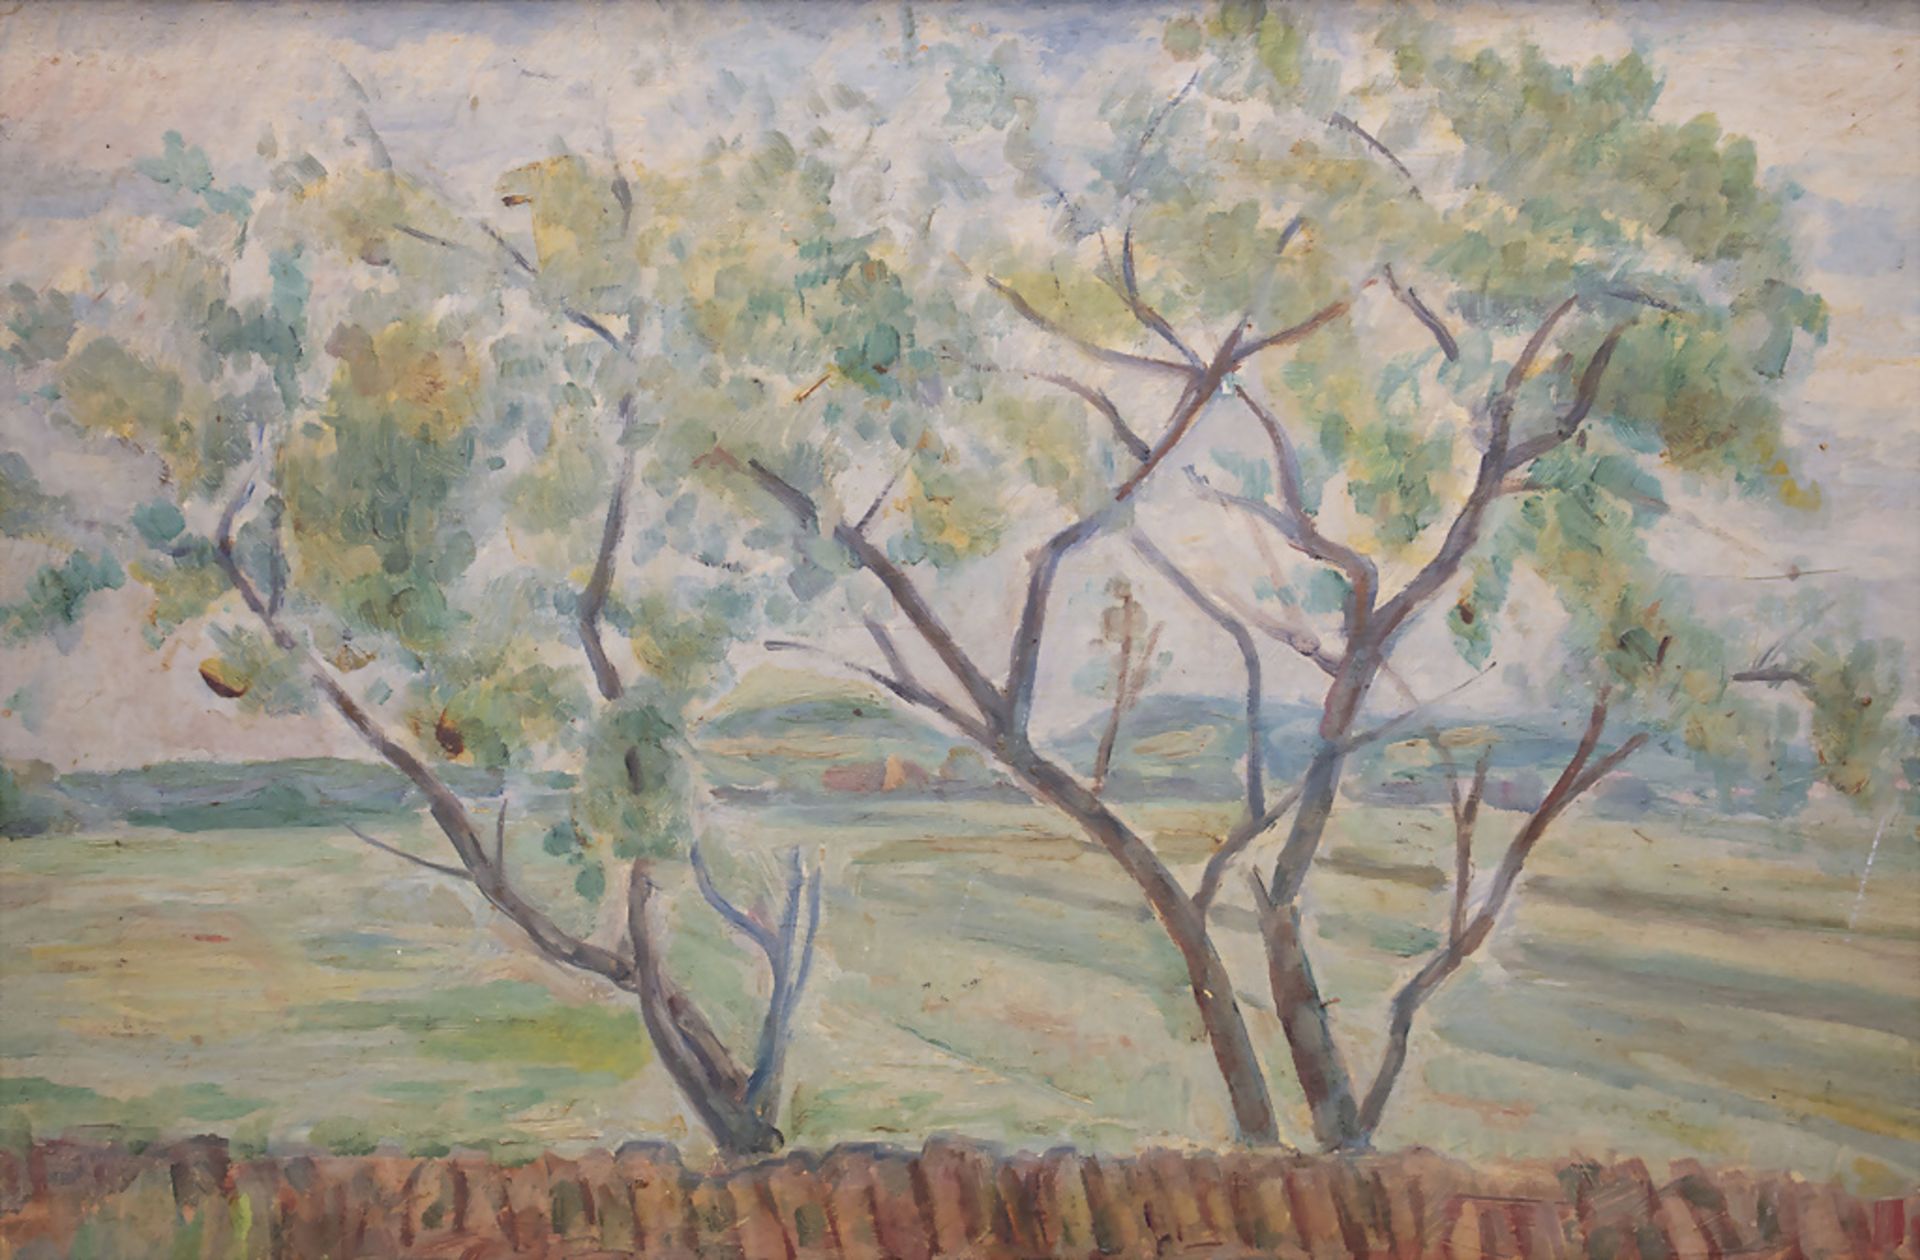 Michel ADLEN (1898-1980), 'Landschaft mit Bäumen' / 'landscape with trees', 1945 - Bild 3 aus 5